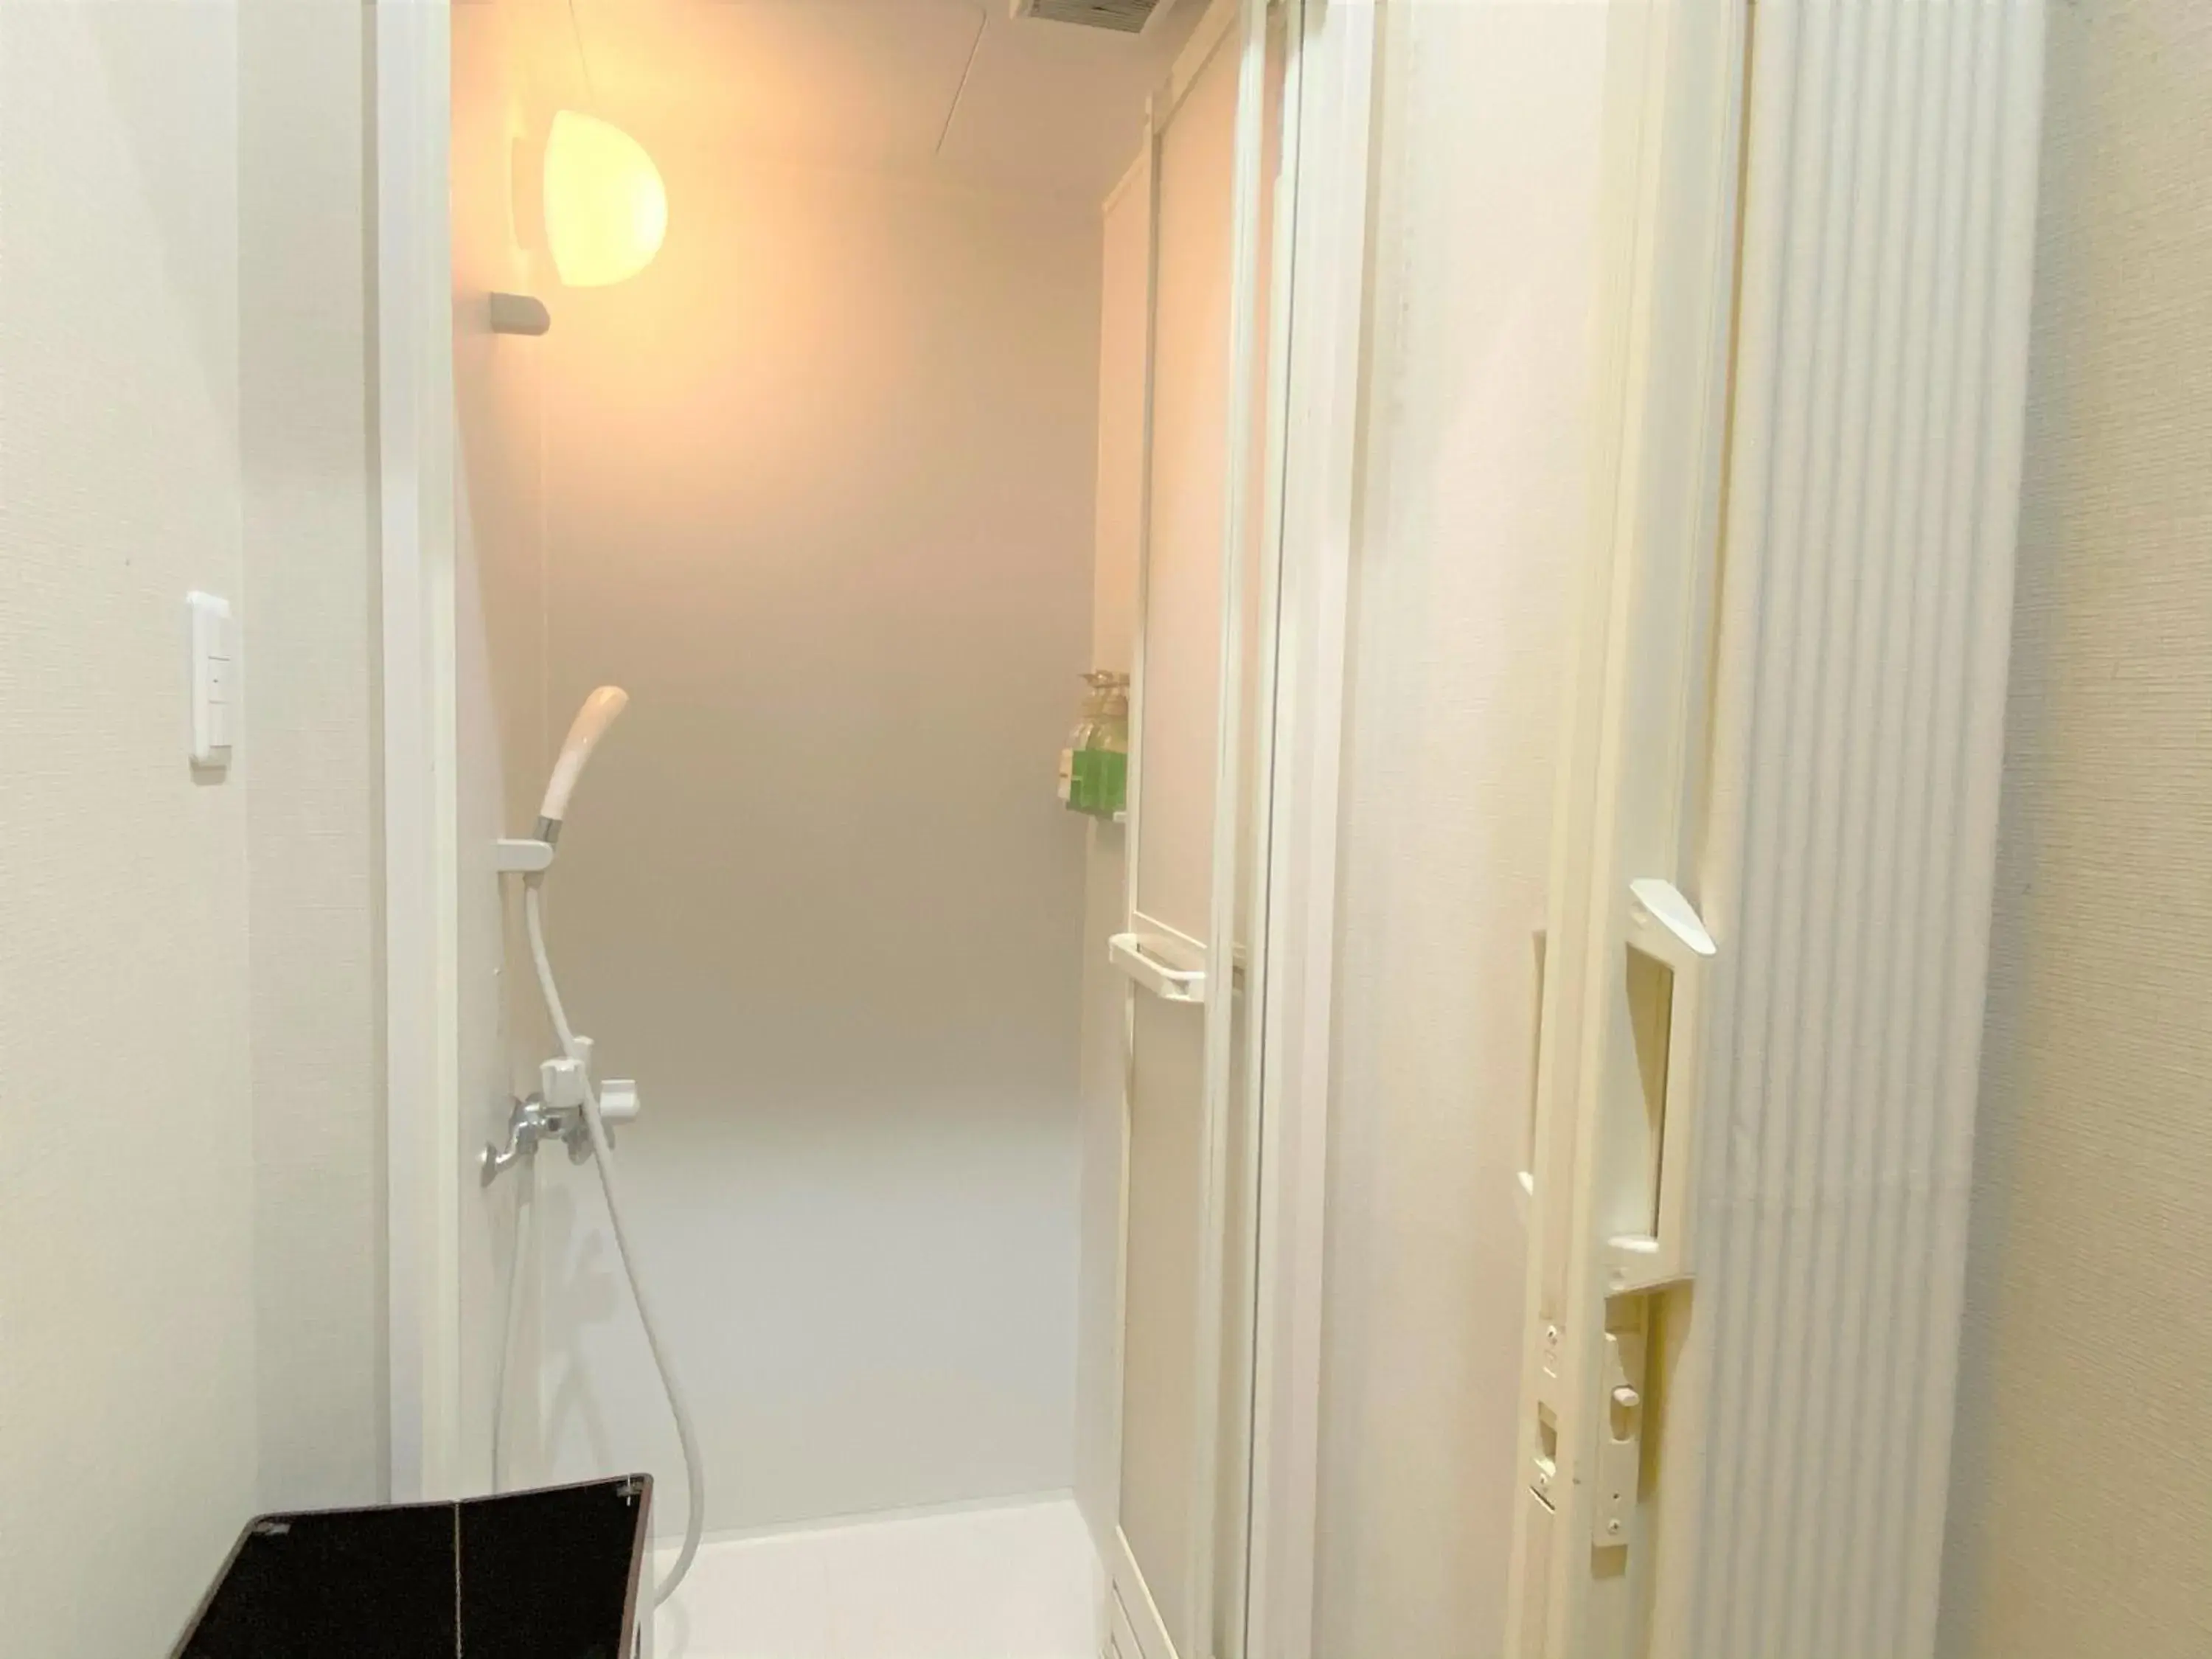 Photo of the whole room, Bathroom in Sakura Hotel Hatagaya